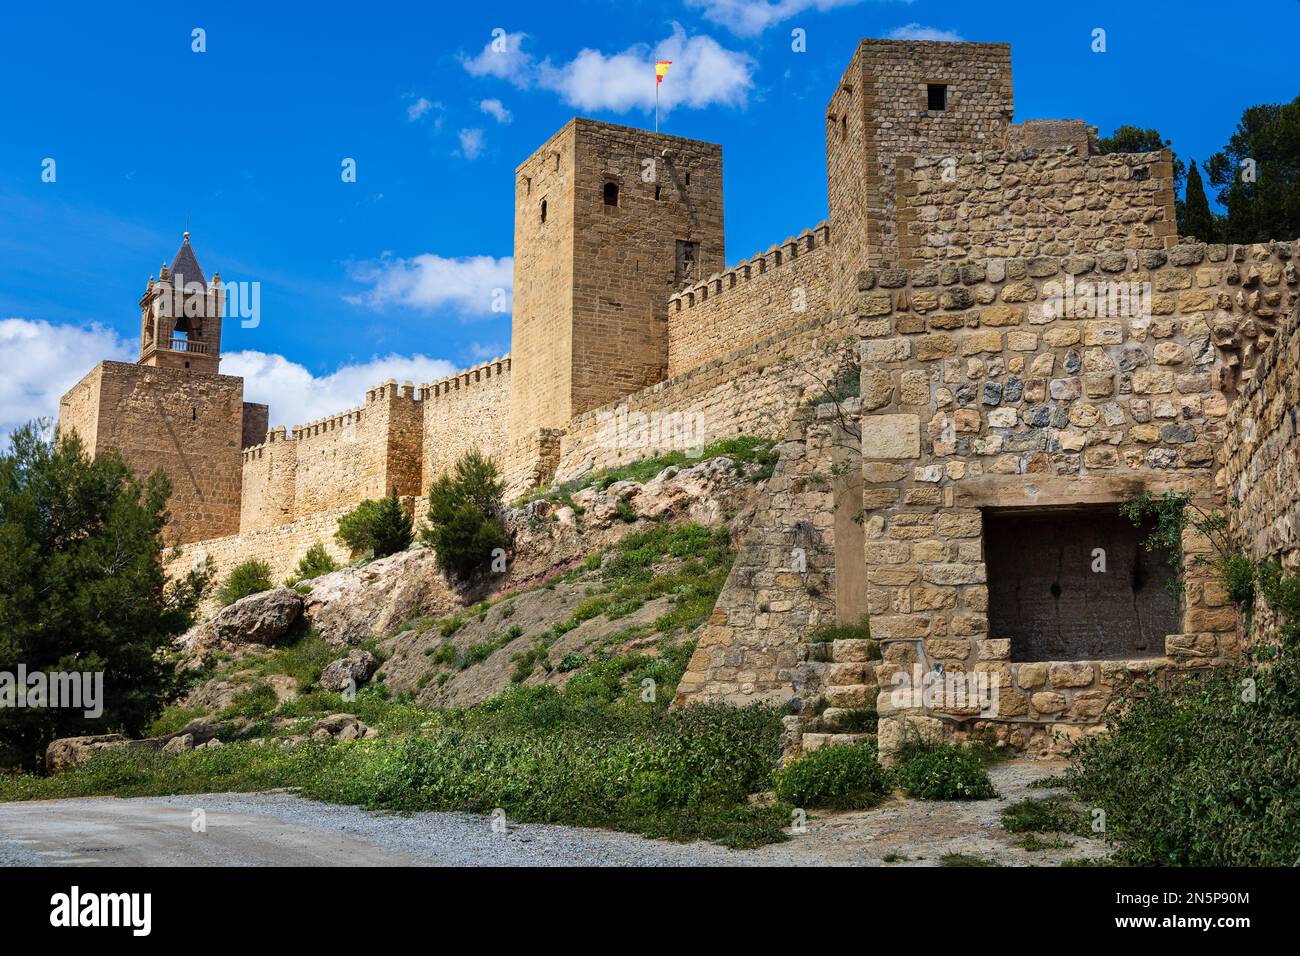 Citadelle d'Antequera (Alcazaba), fortification du 11th siècle avec tours et murs fortifiés. Antequera, province de Malaga, Andalousie, Espagne. Banque D'Images